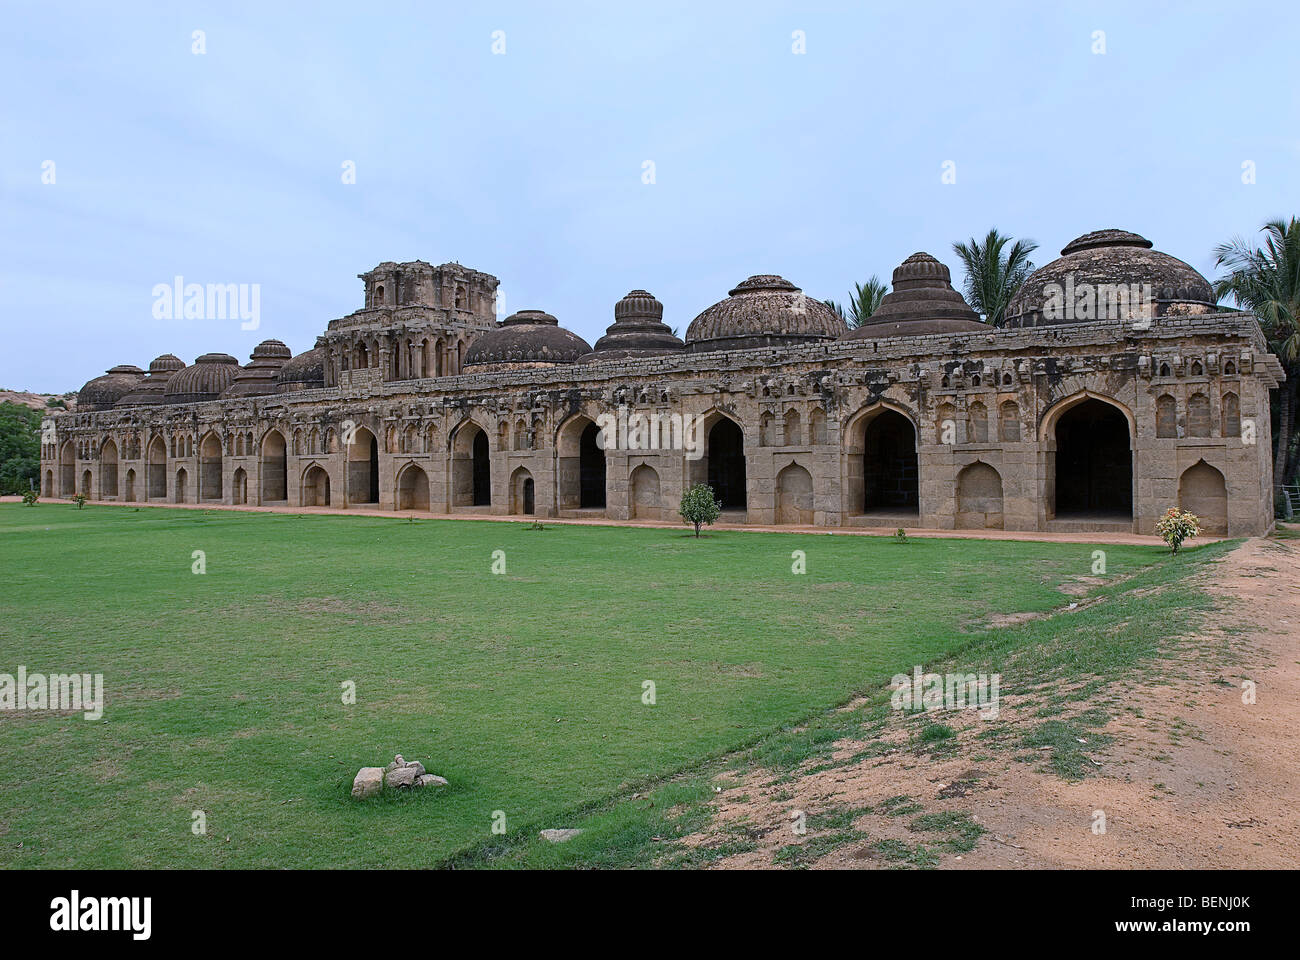 Los establos de elefantes de una fachada de aberturas arqueadas y recesos en estilo Bahmani Hampi Karnataka India Foto de stock